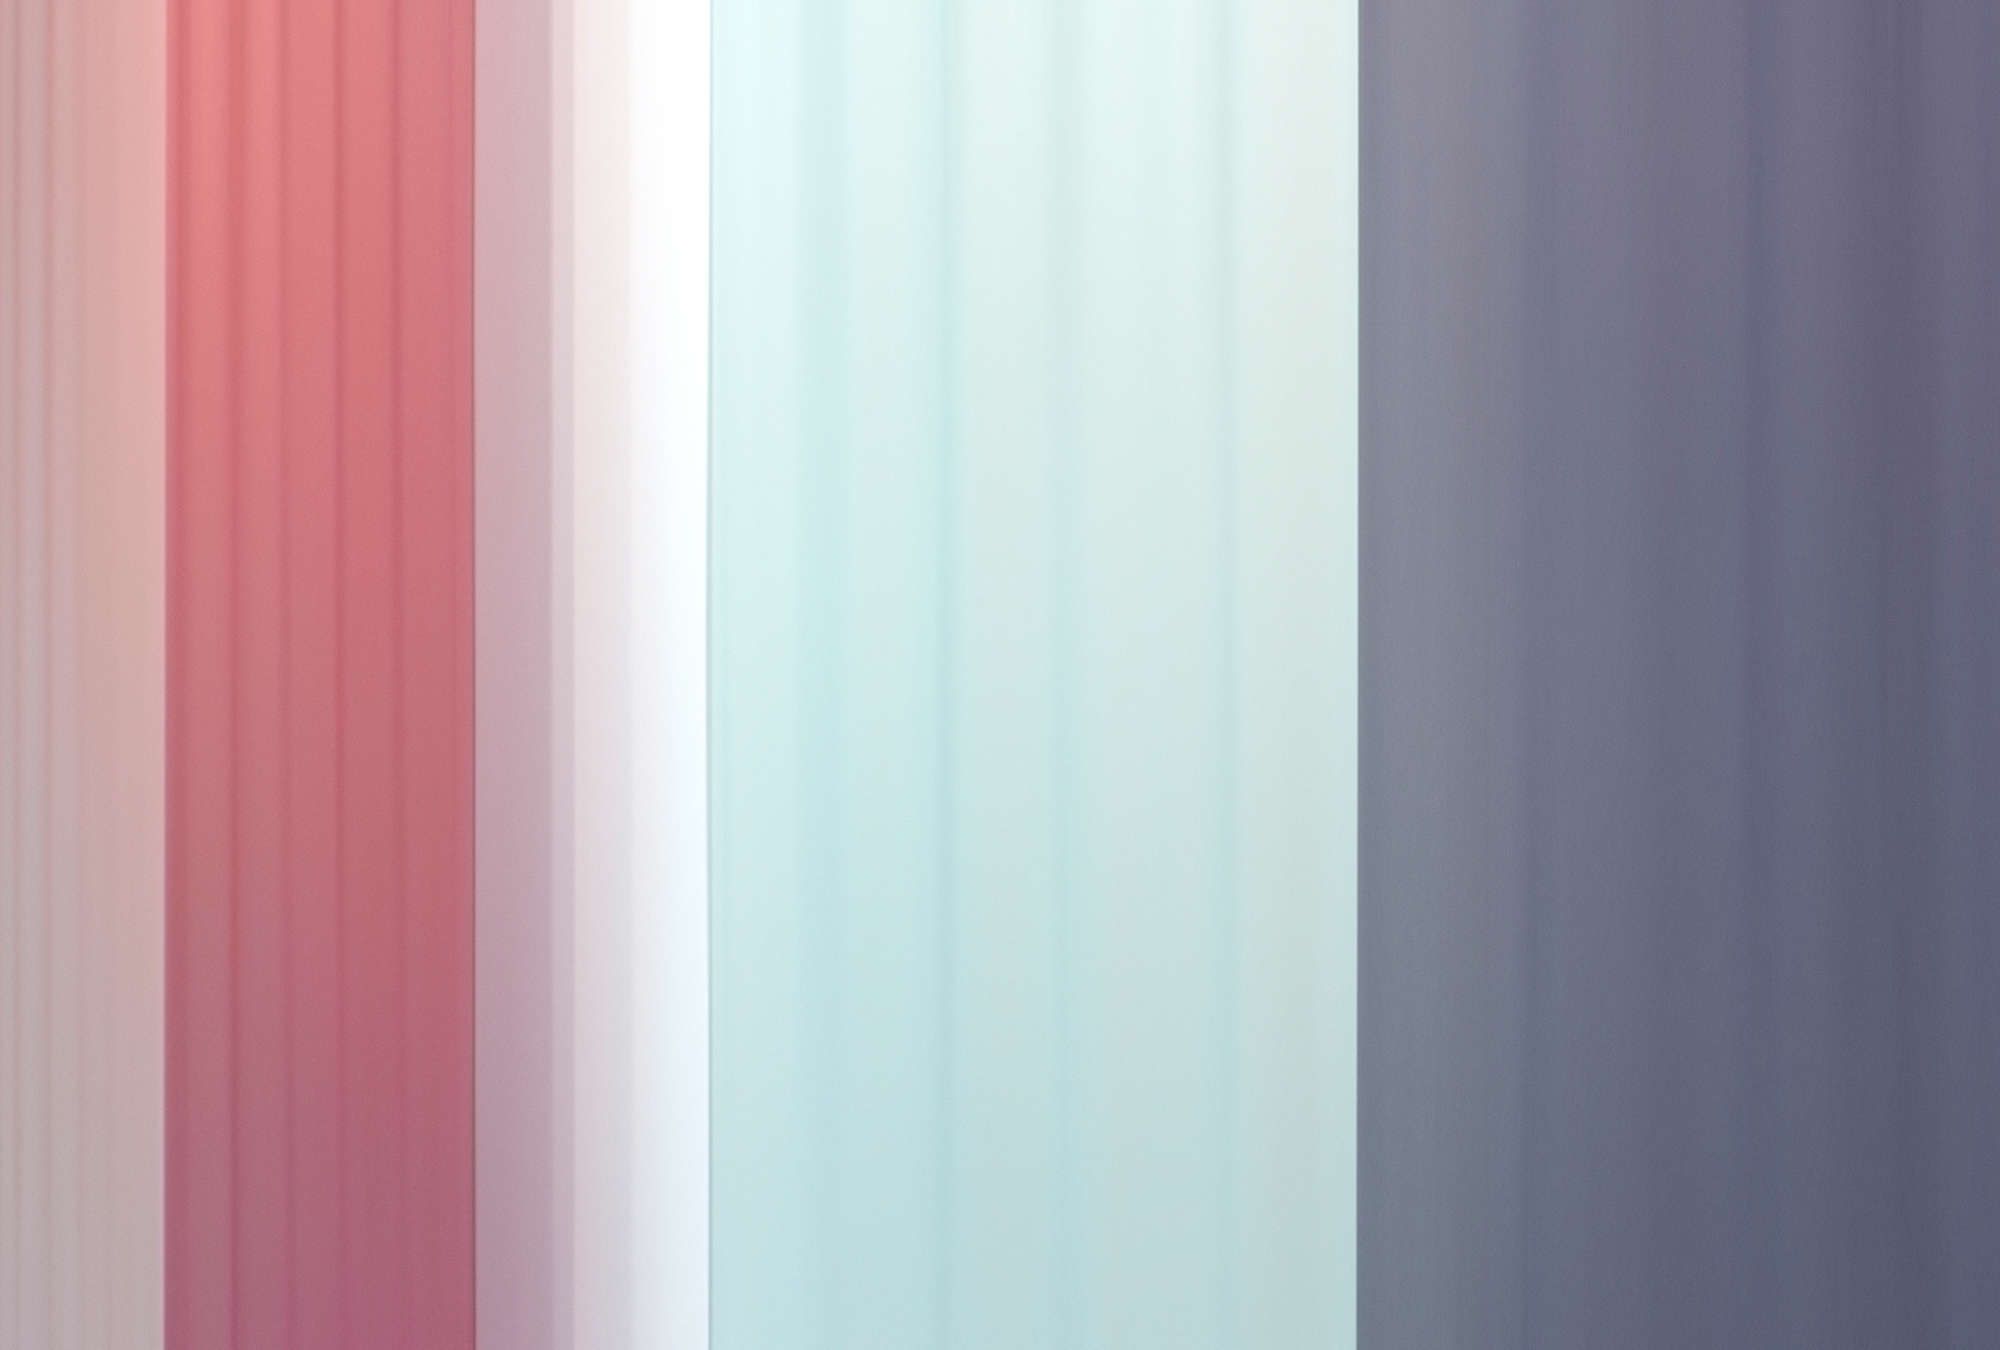             Fotomurali »co-colores 2« - sfumatura di colore con strisce - rosa, blu chiaro, blu scuro | tessuto non tessuto leggermente strutturato
        